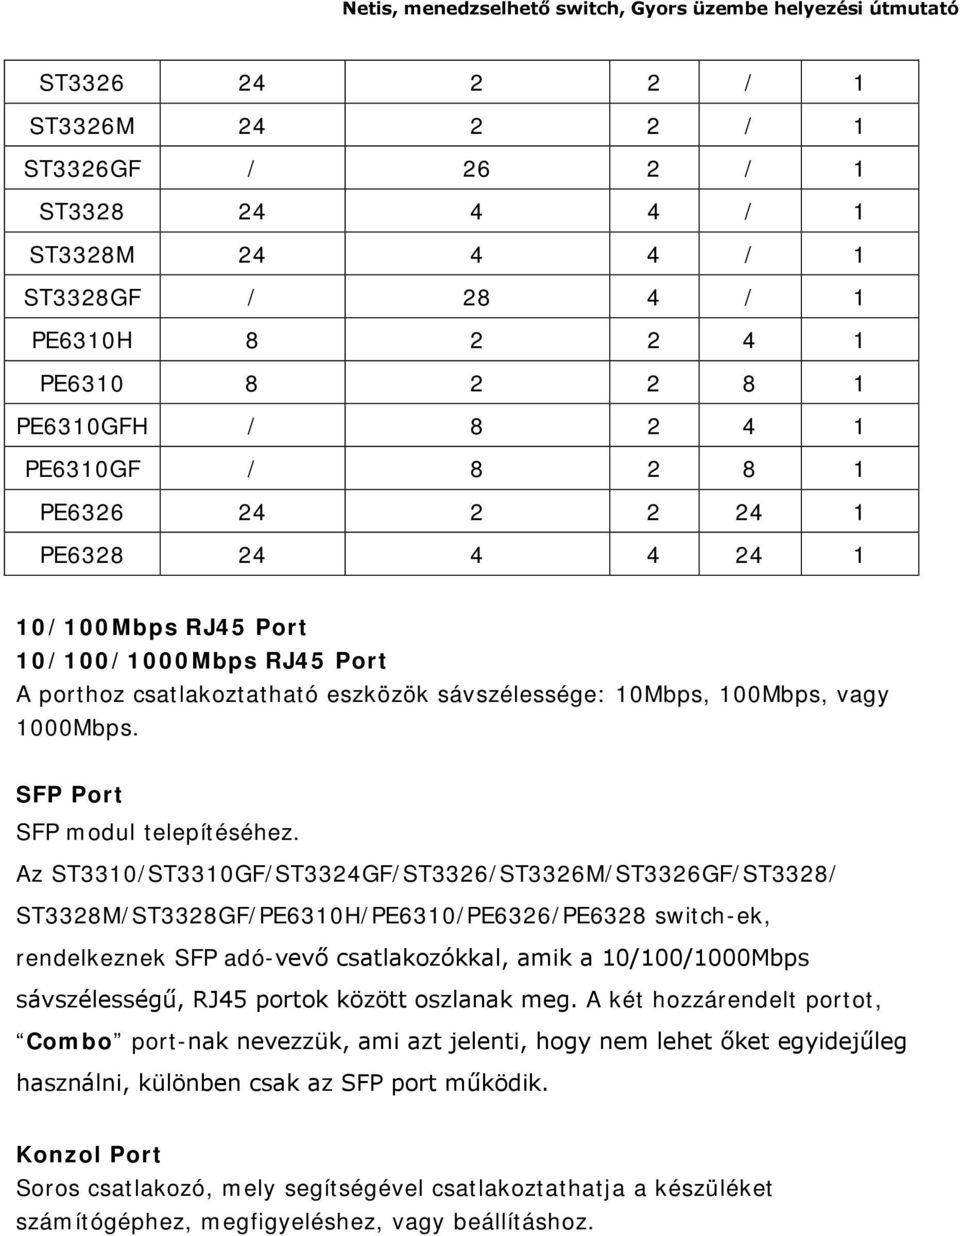 Az ST3310/ST3310GF/ST3324GF/ST3326/ST3326M/ST3326GF/ST3328/ ST3328M/ST3328GF/PE6310H/PE6310/PE6326/PE6328 switch-ek, rendelkeznek SFP adó-vevő csatlakozókkal, amik a 10/100/1000Mbps sávszélességű,